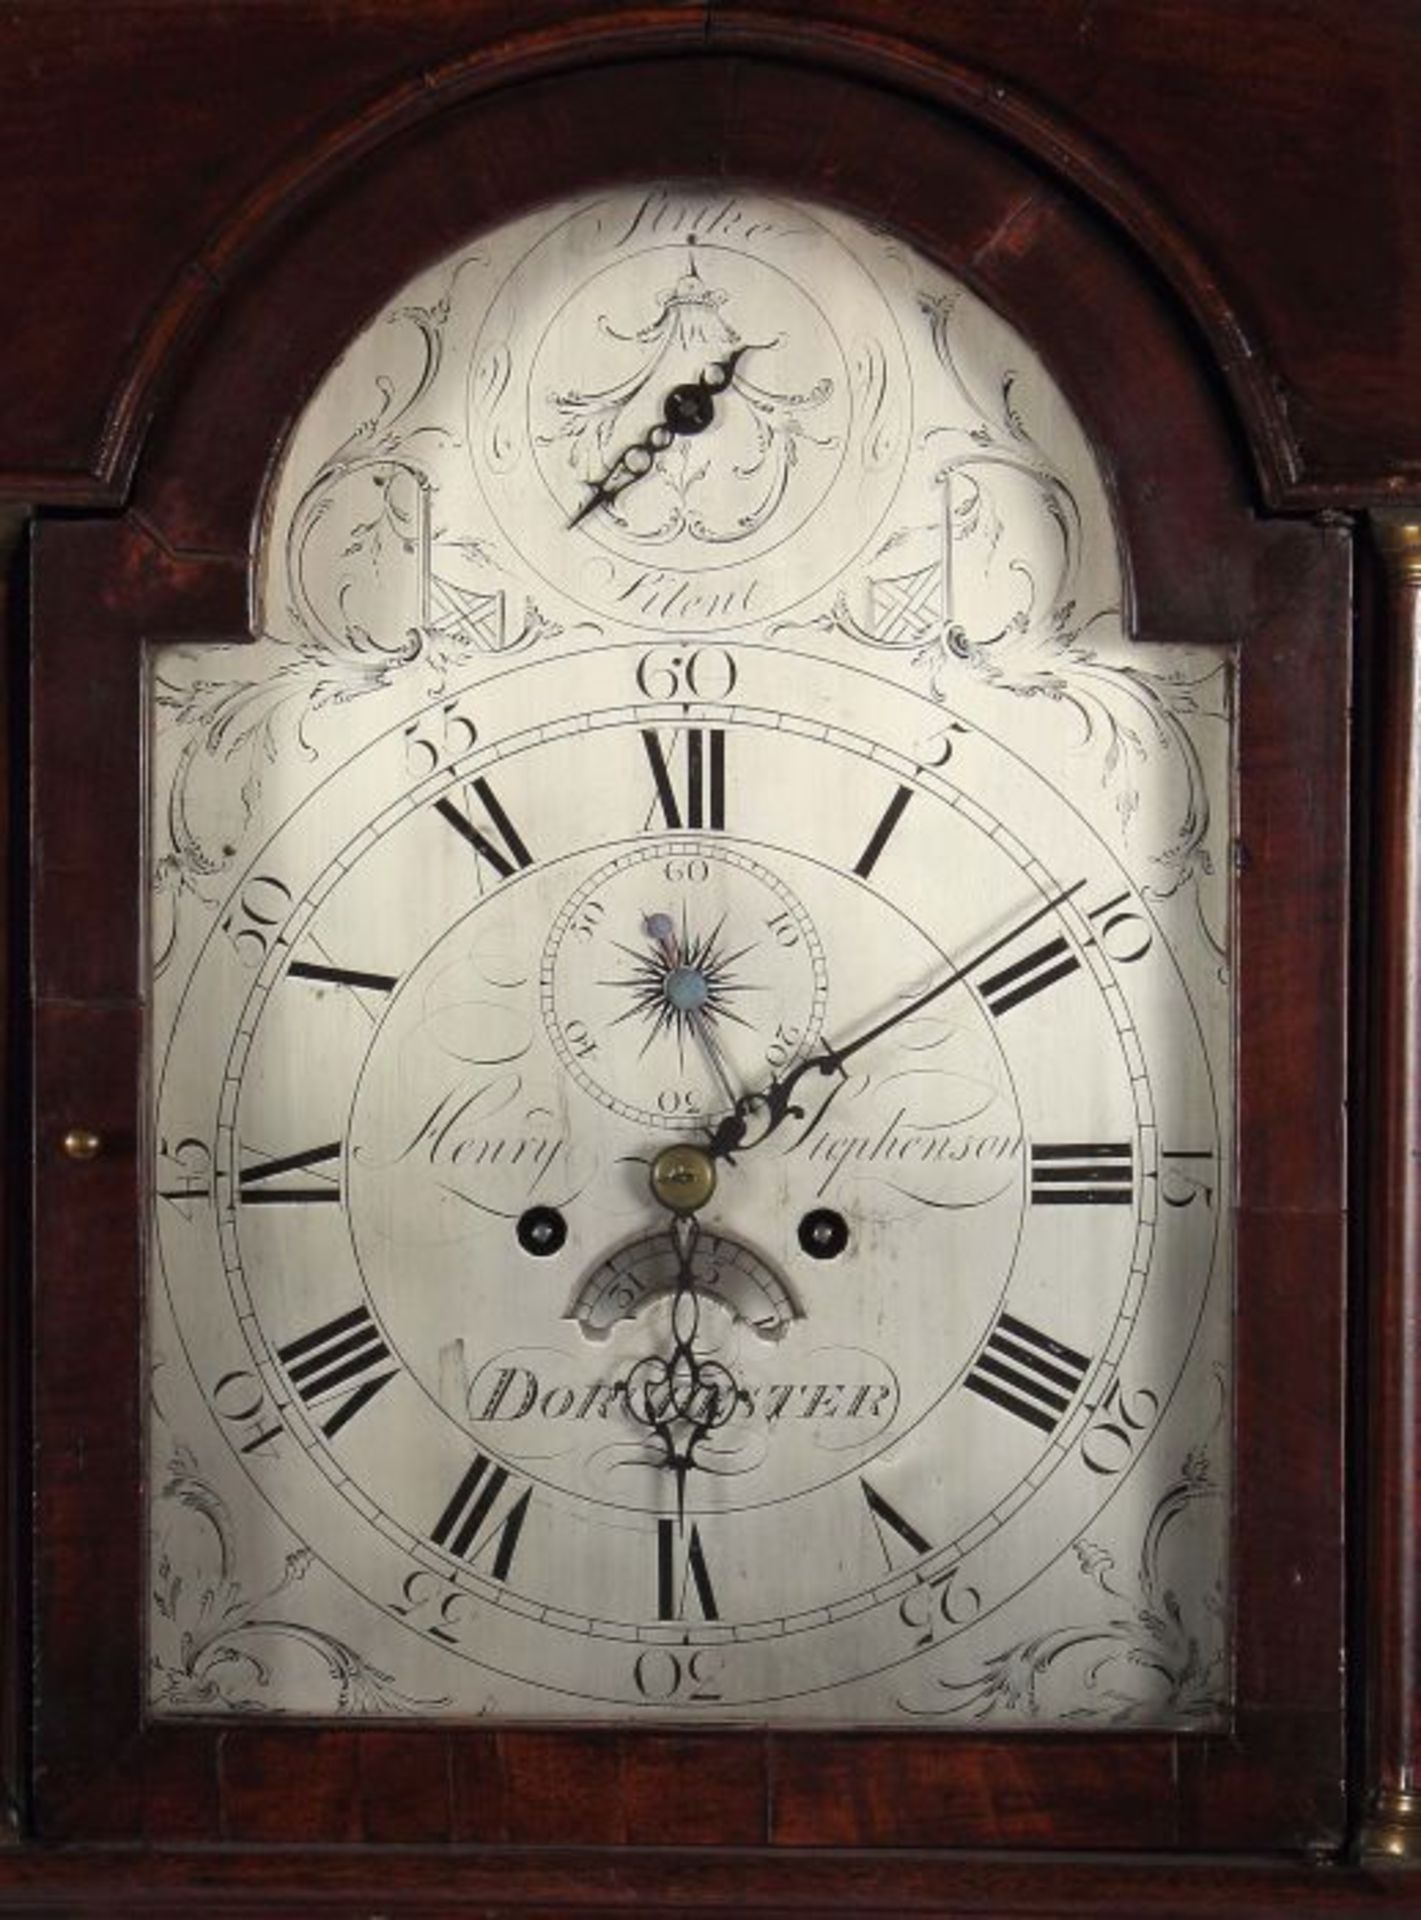 George III-Standuhr England, Ende 19. Jh., bez. " Henry Stephenson ", Eiche, gerader Uhrenkorpus, - Bild 2 aus 2